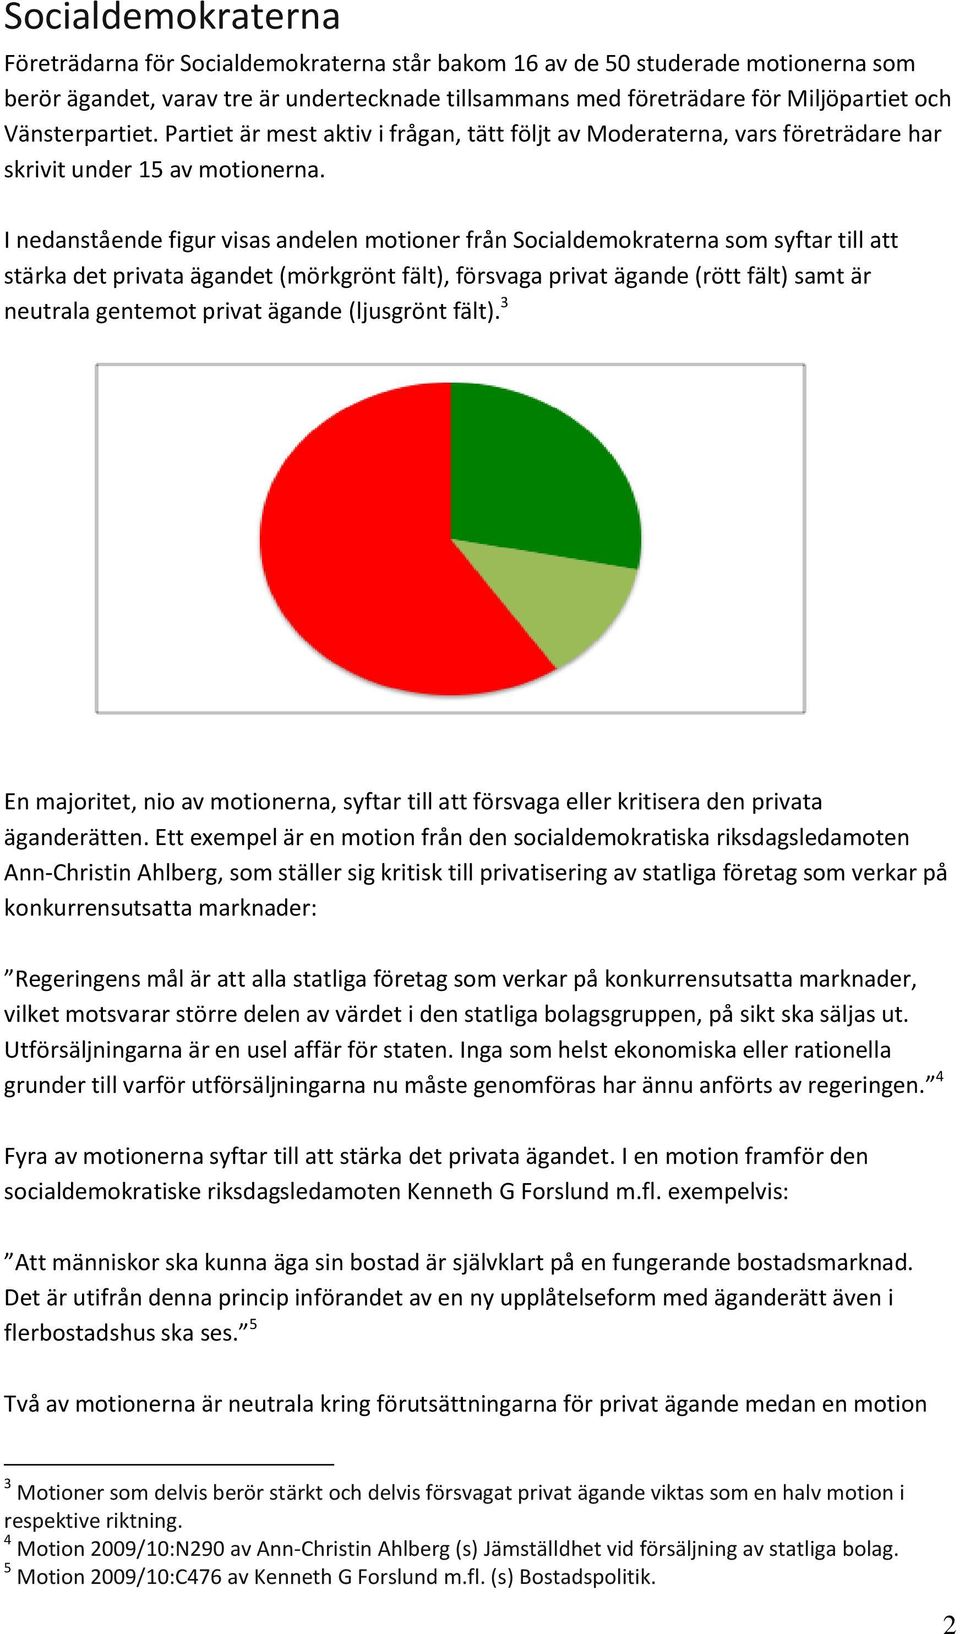 I nedanstående figur visas andelen motioner från Socialdemokraterna som syftar till att stärka det a t (mörkgrönt fält), försvaga (rött fält) samt är neutrala gentemot (ljusgrönt fält).